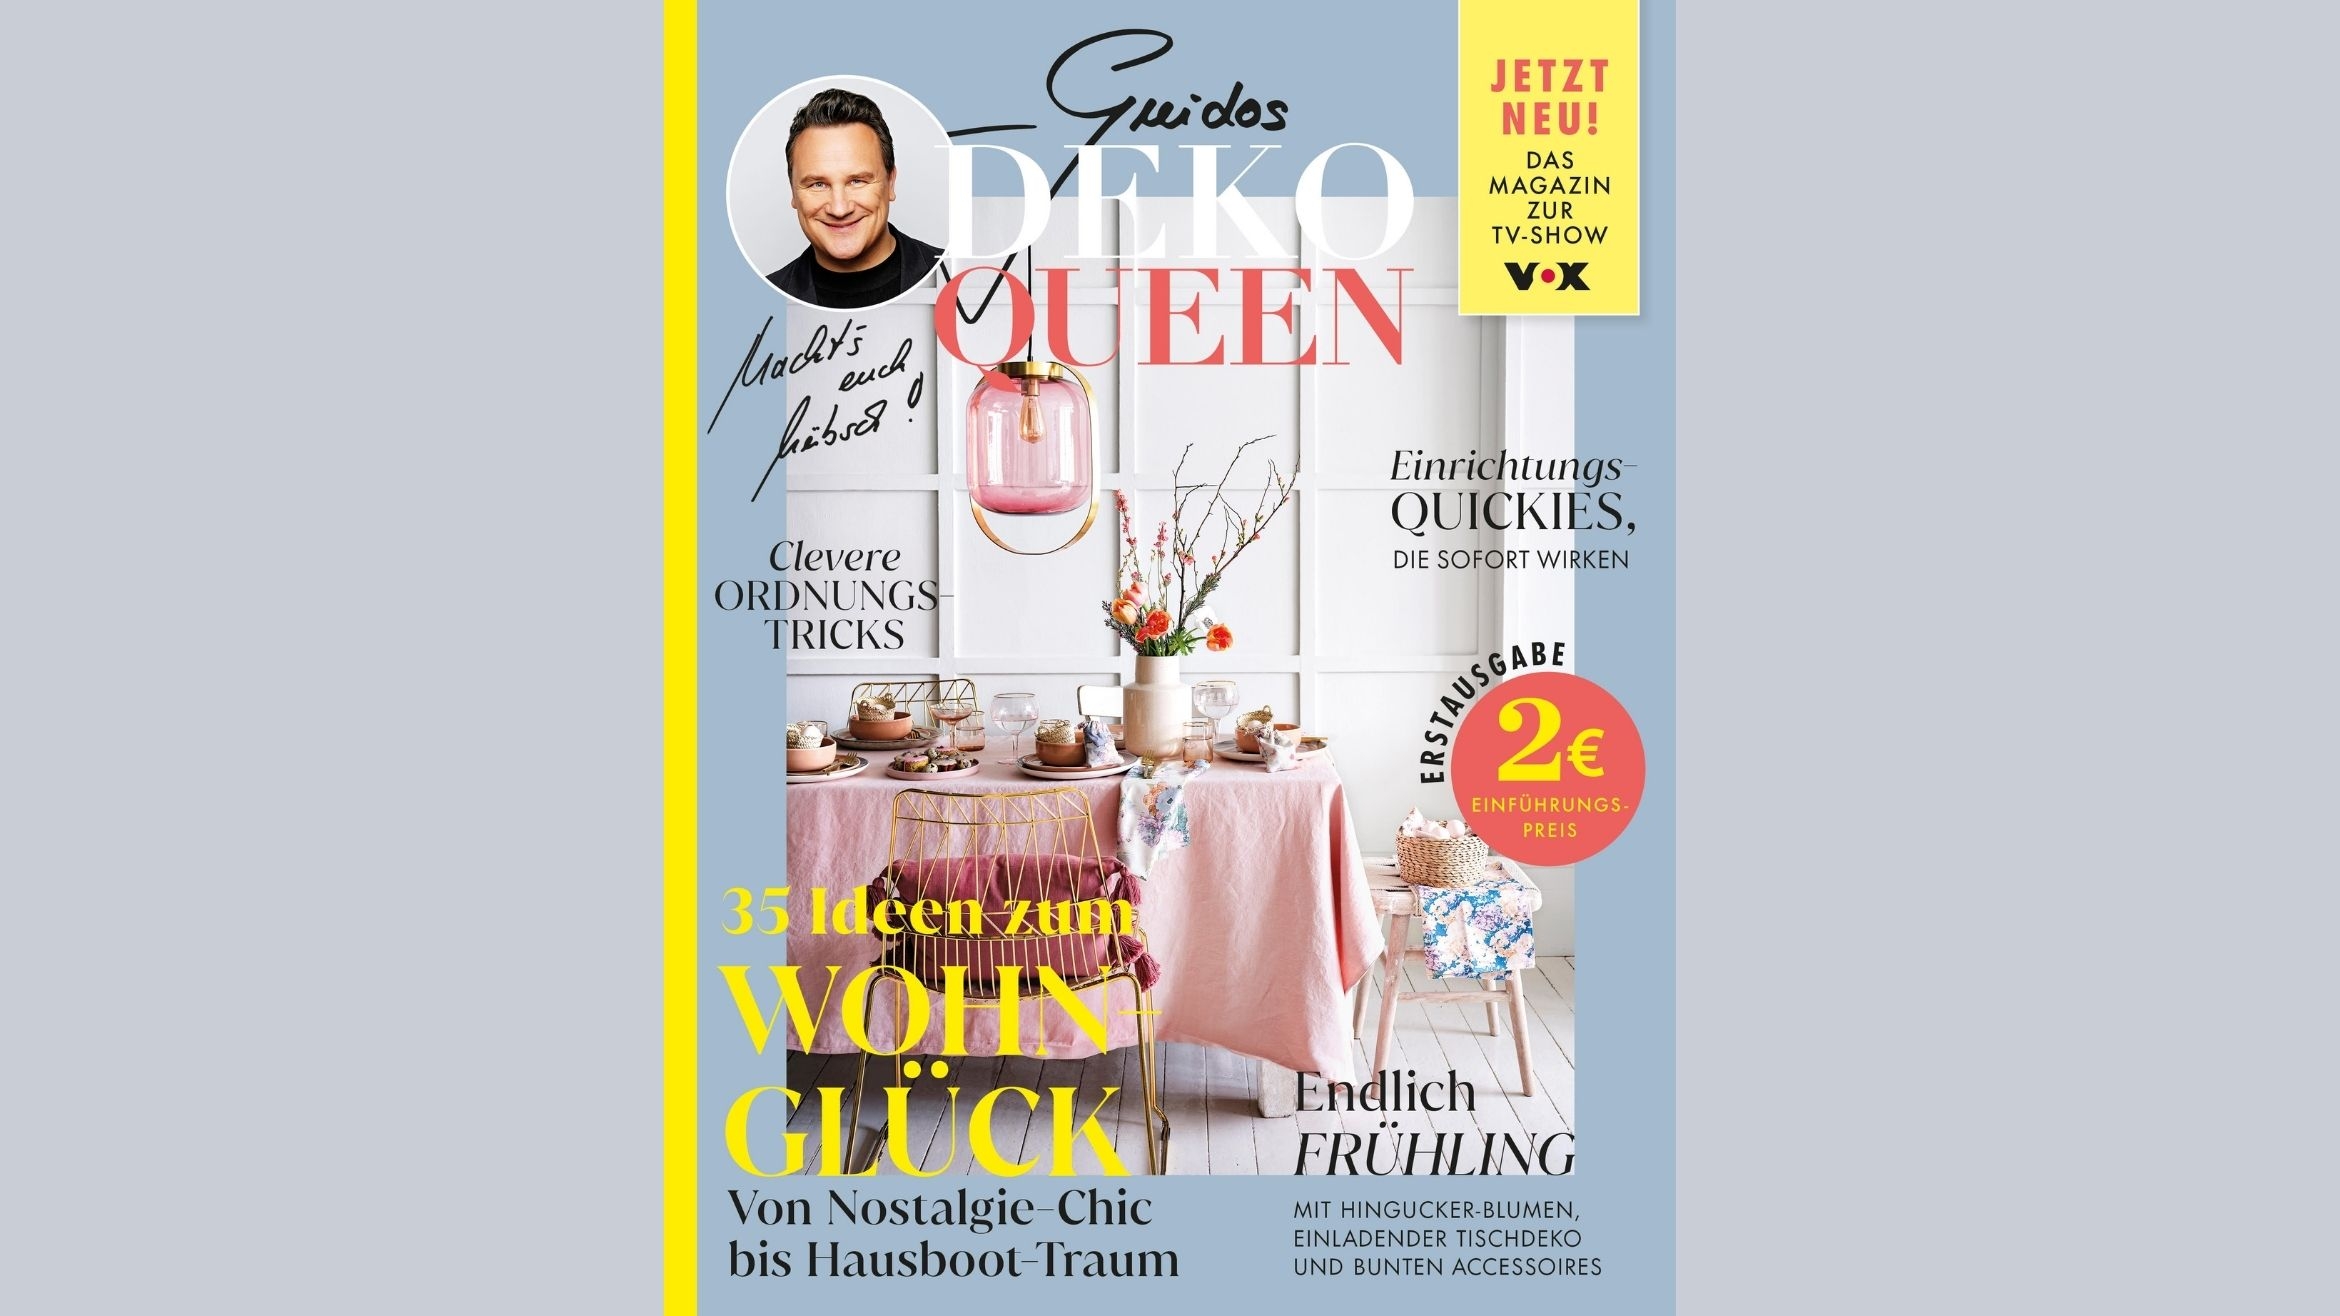 "Guidos Deko Queen" ist bereits das zweite Print-Magazin mit dem Designer Guido Maria Kretschmer –